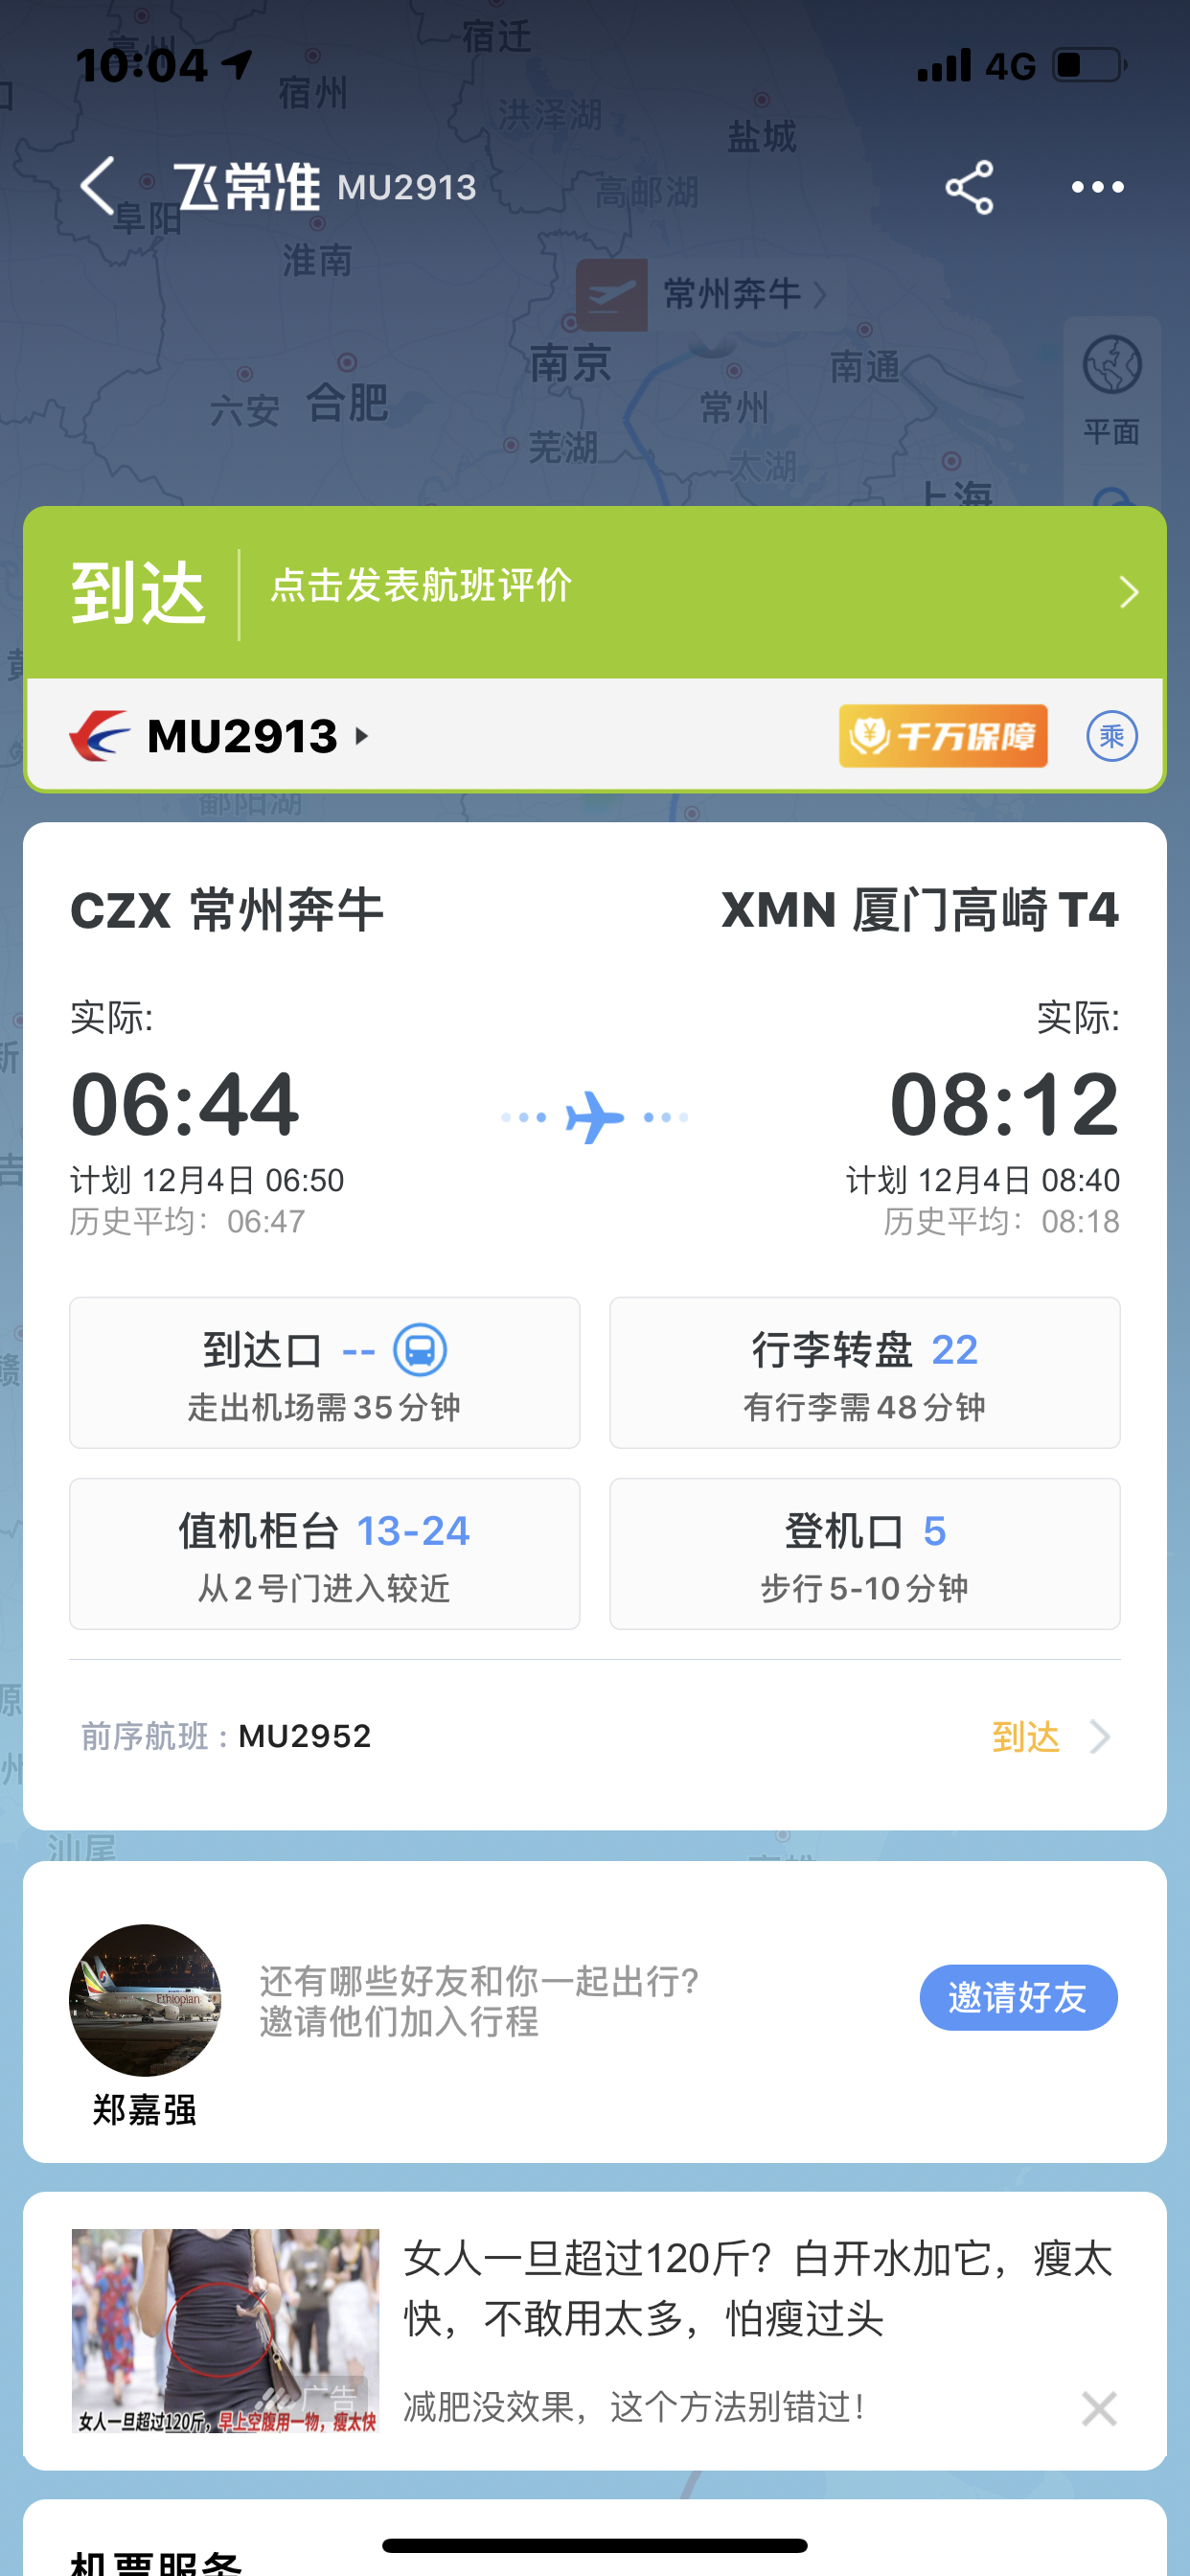 MU2913  (խ)
CXZ-XMN  04 DEC 2020